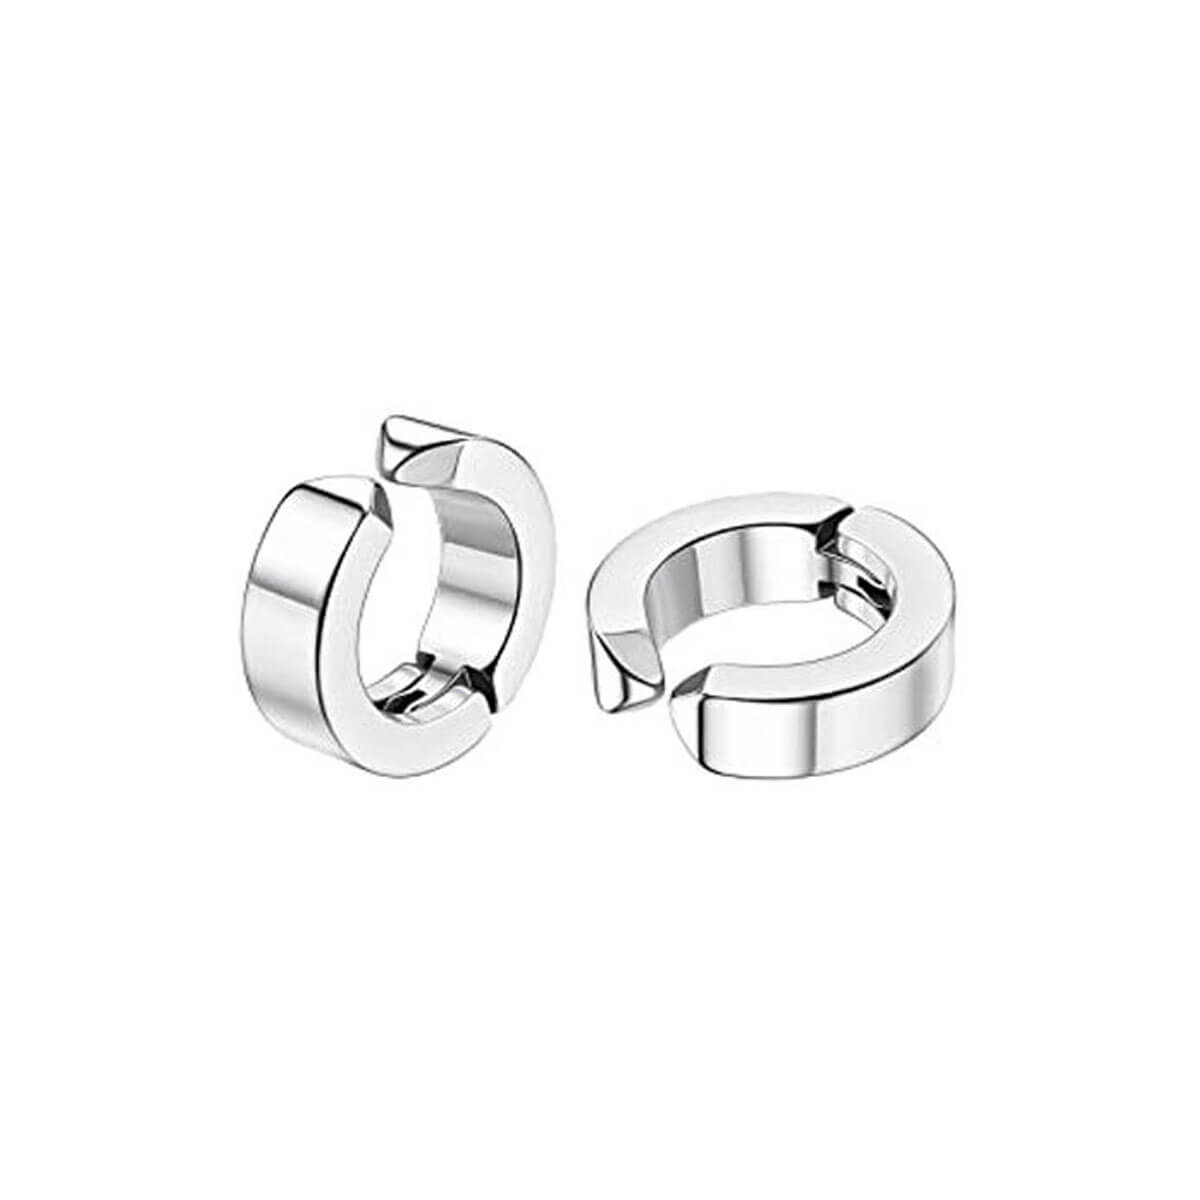 Steel ring clip earrings 4mm (steel 316L)